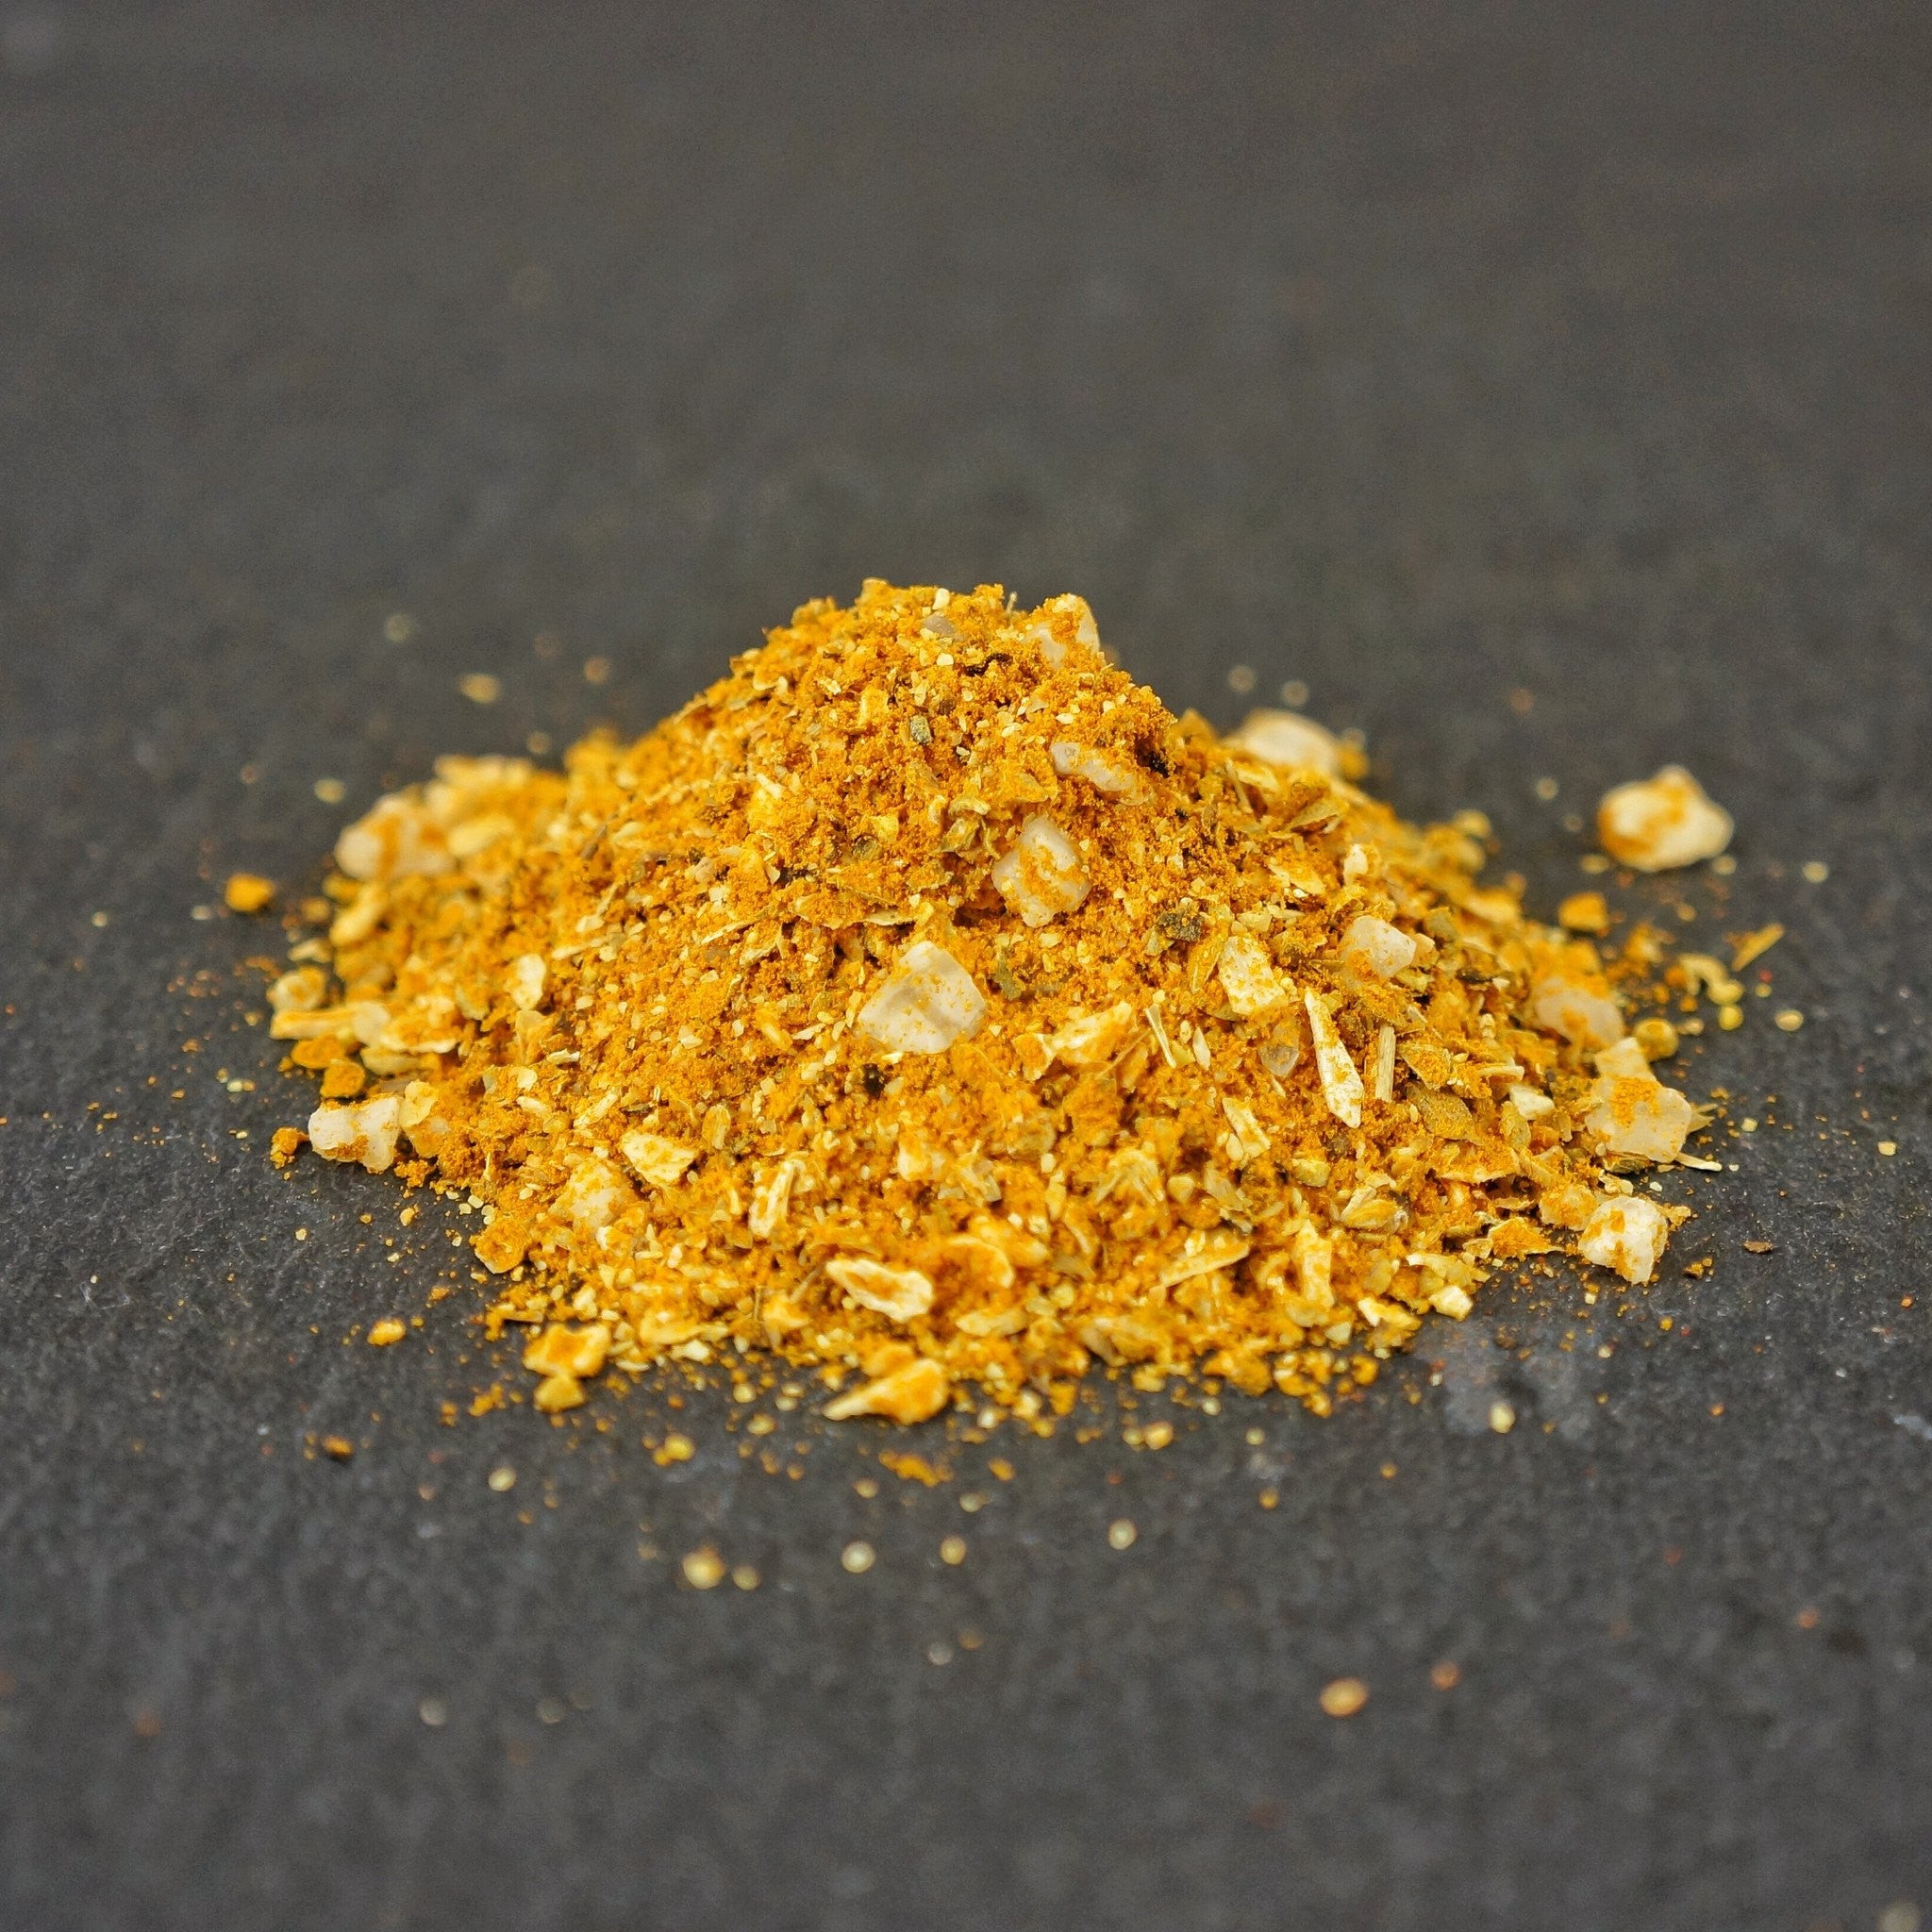 Perfeito – Brazilian Spice Blends